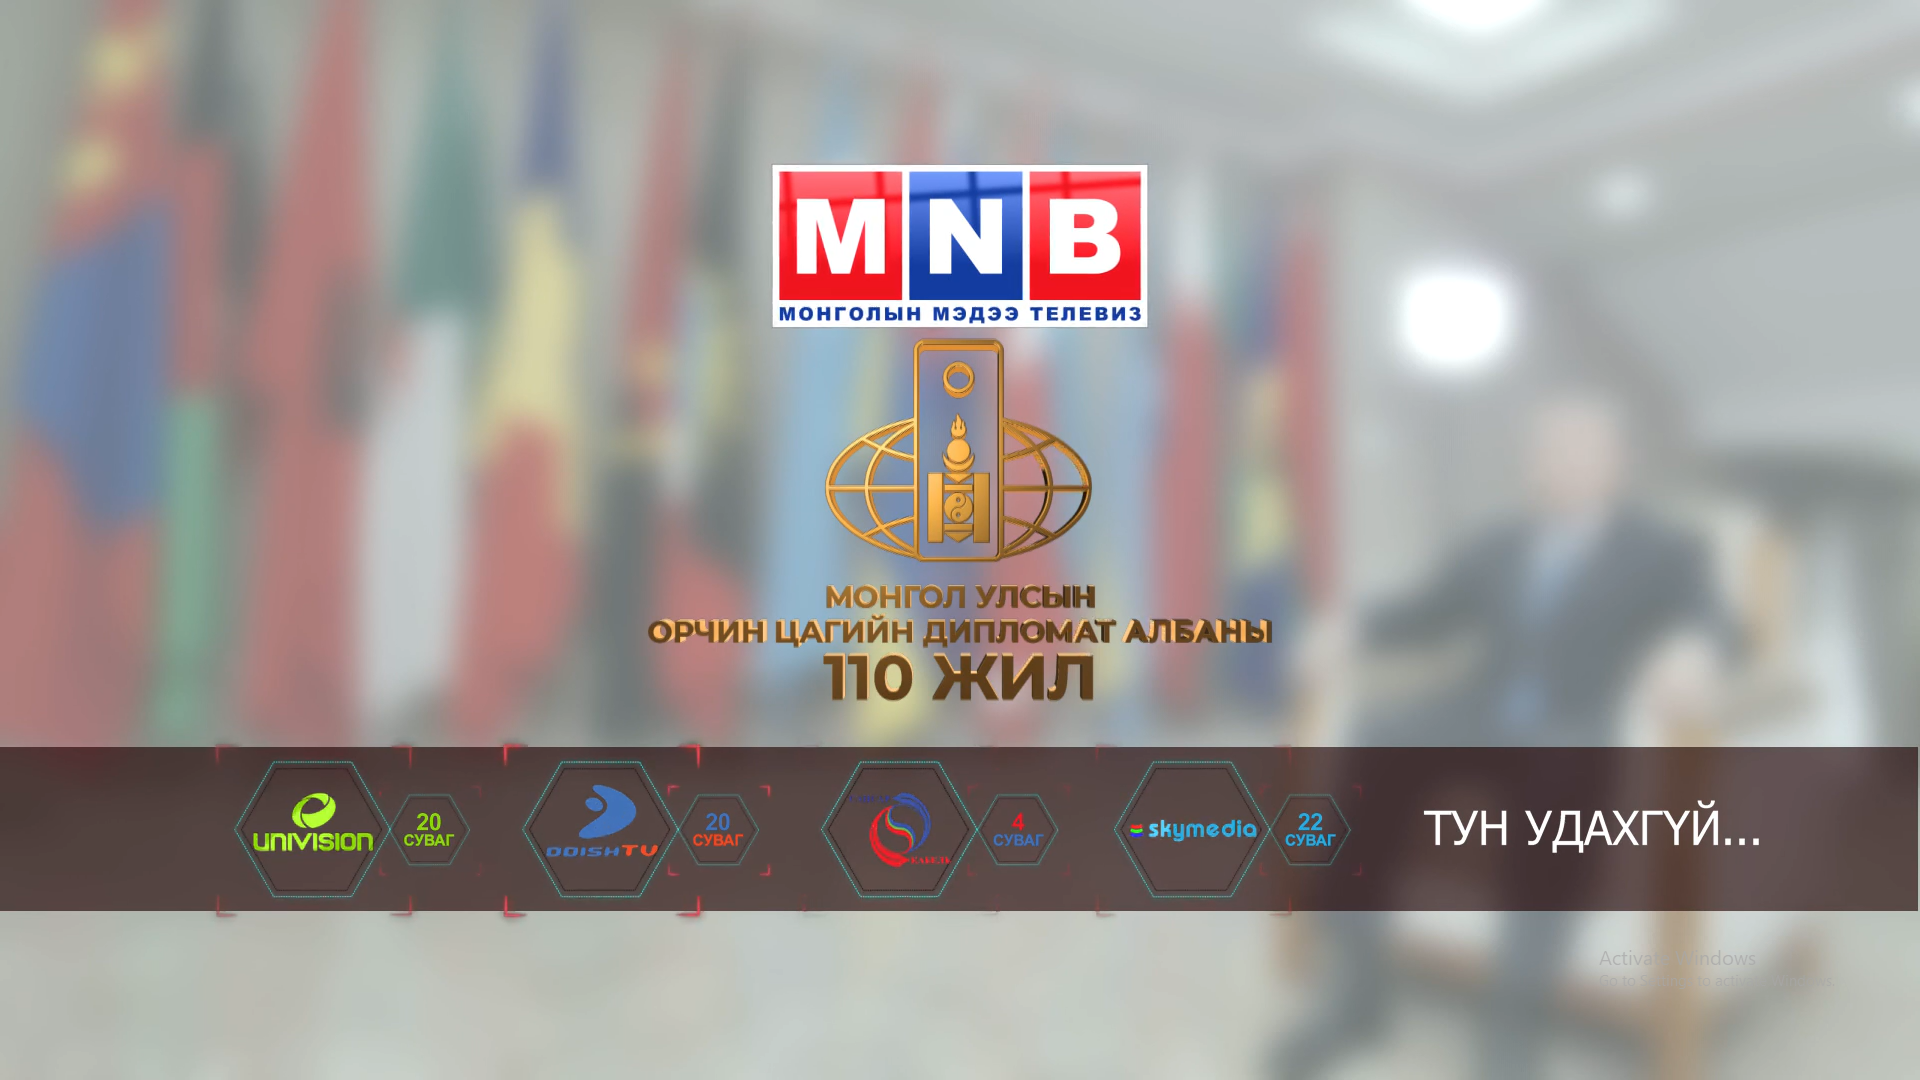 “Монгол Улсын орчин цагийн дипломат албаны 110 жил” БАРИМТАТ КИНО дэлгэцнээ тун удахгүй…